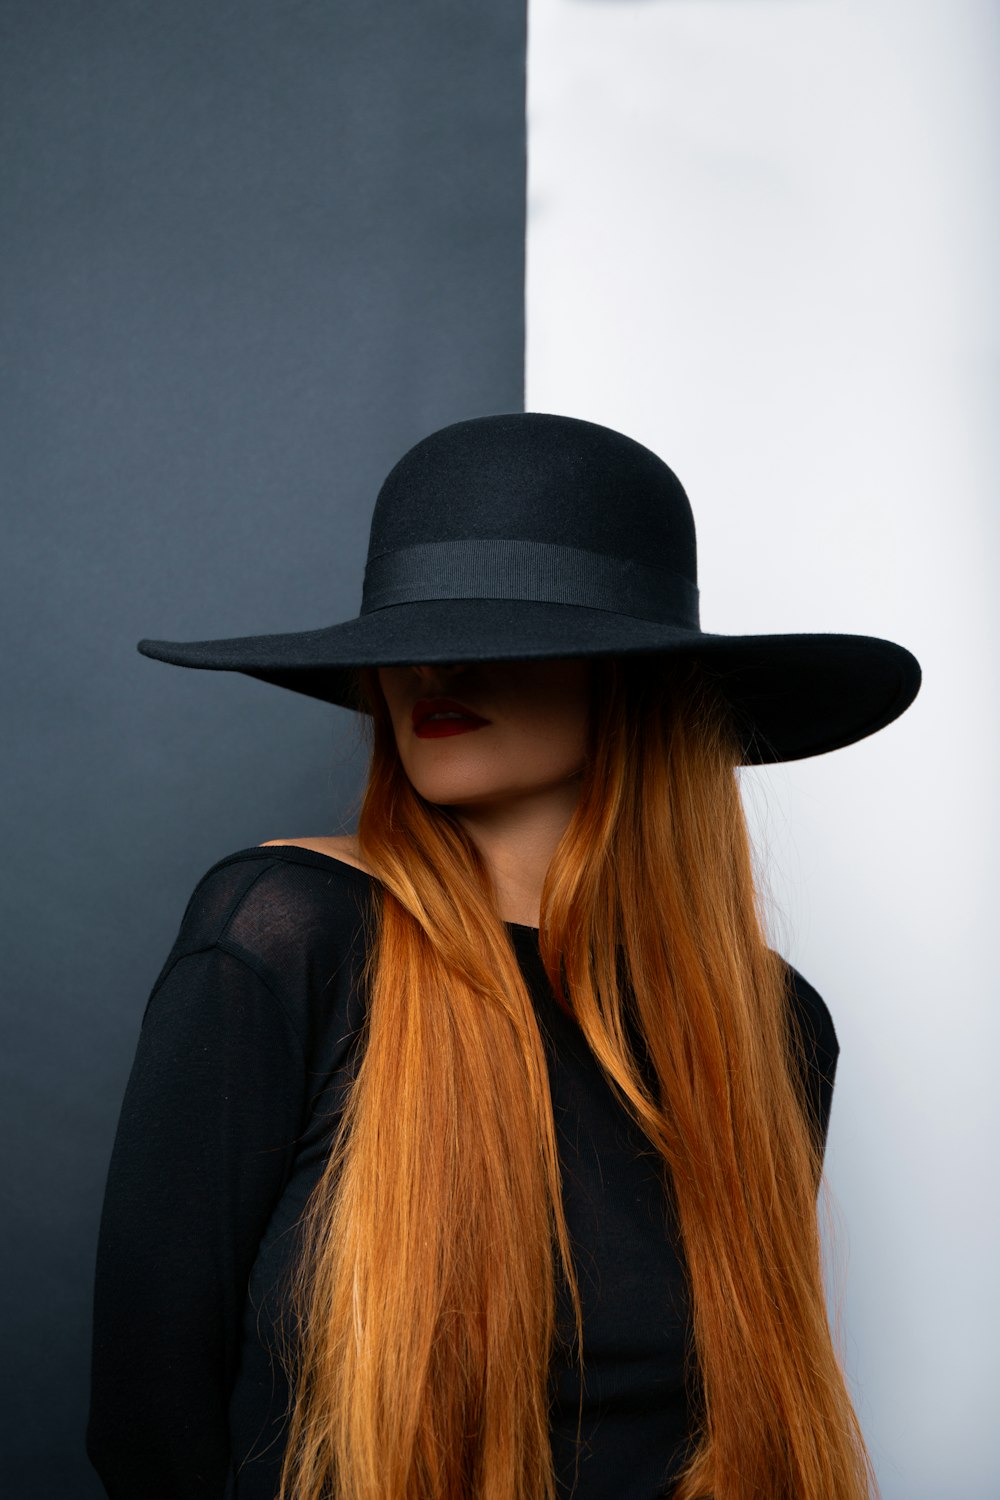 Une femme aux longs cheveux roux portant un chapeau noir